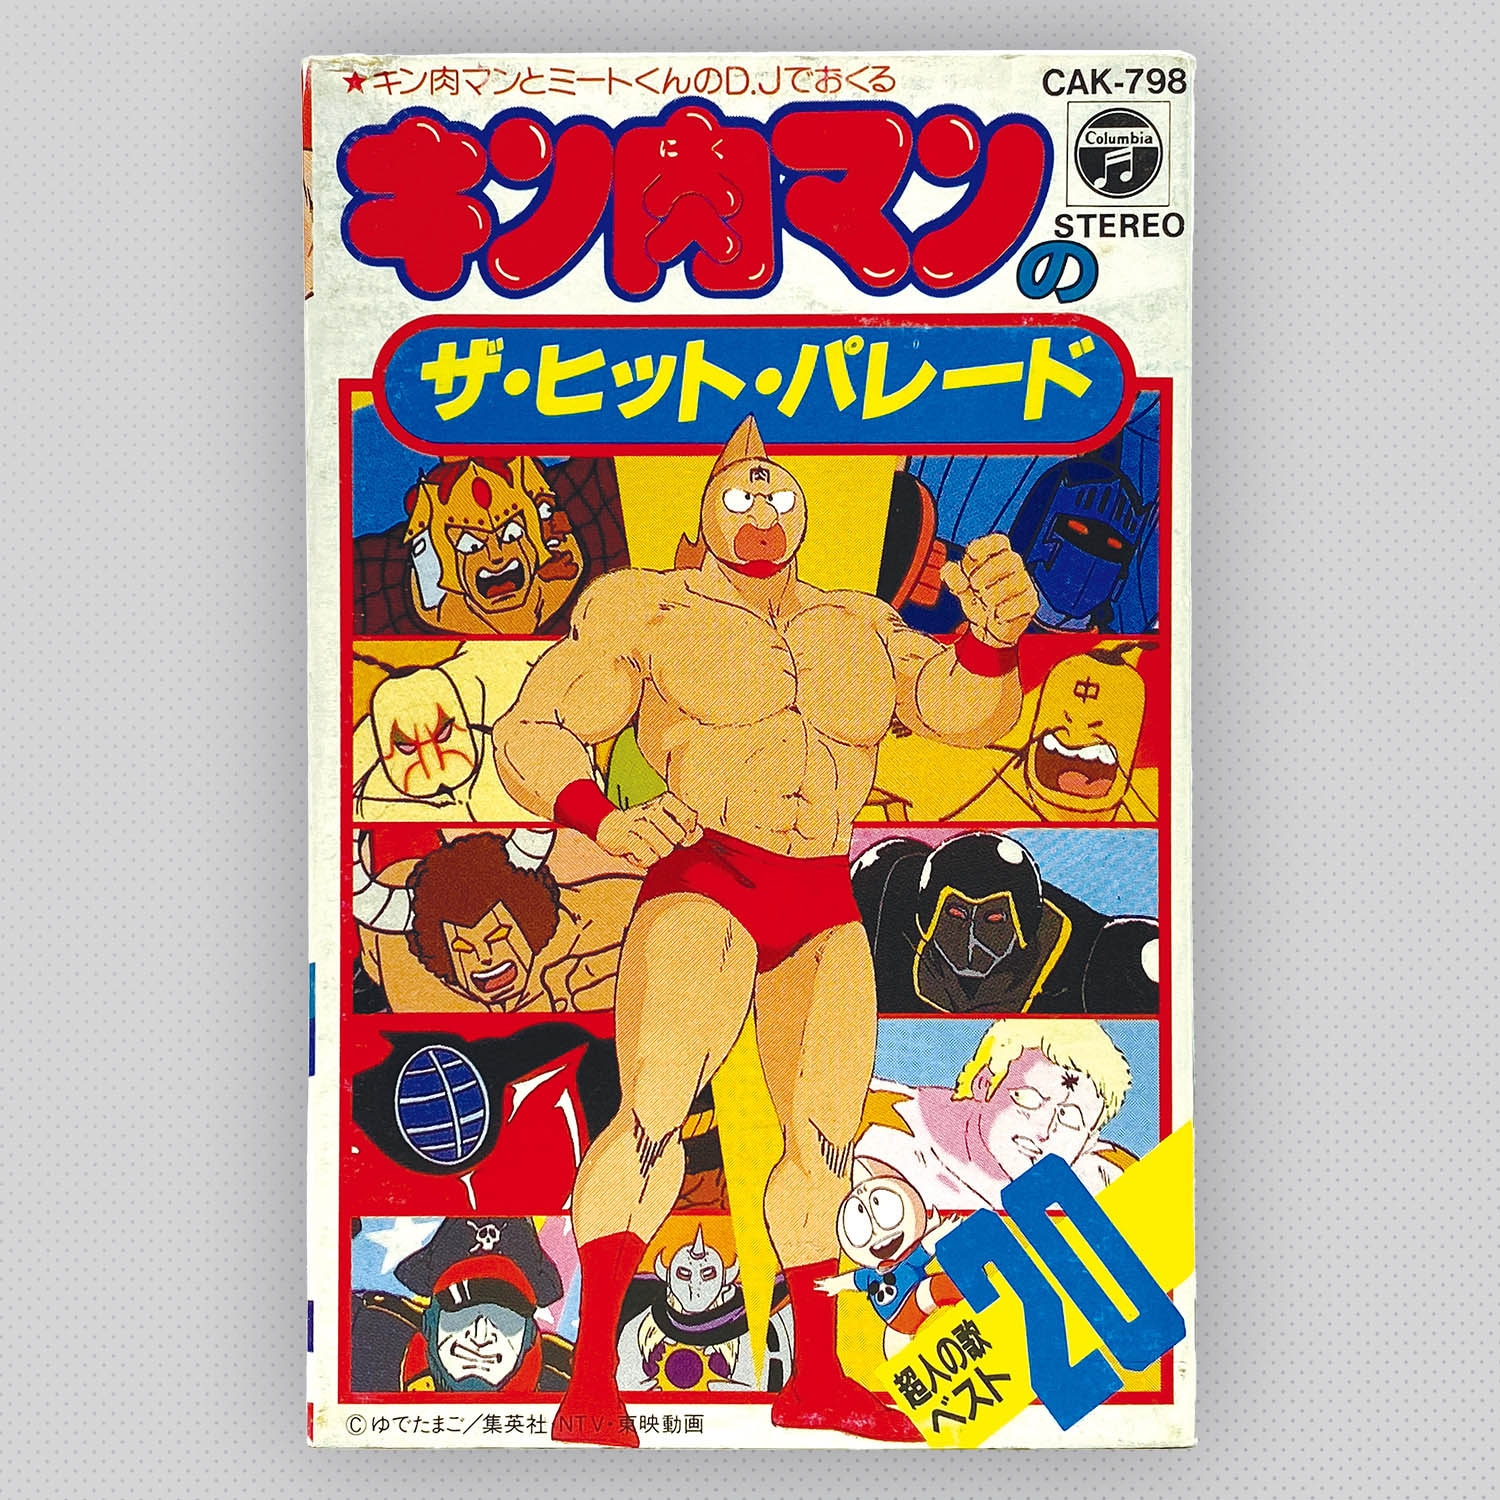 日本で買† 激レア 希少 キン肉マンのザ・ヒット・パレード 超人の歌ベスト20 カセットテープ 音 CAK-798 昭和レトロ 80年代 当時物 ビンテージ キン肉マン